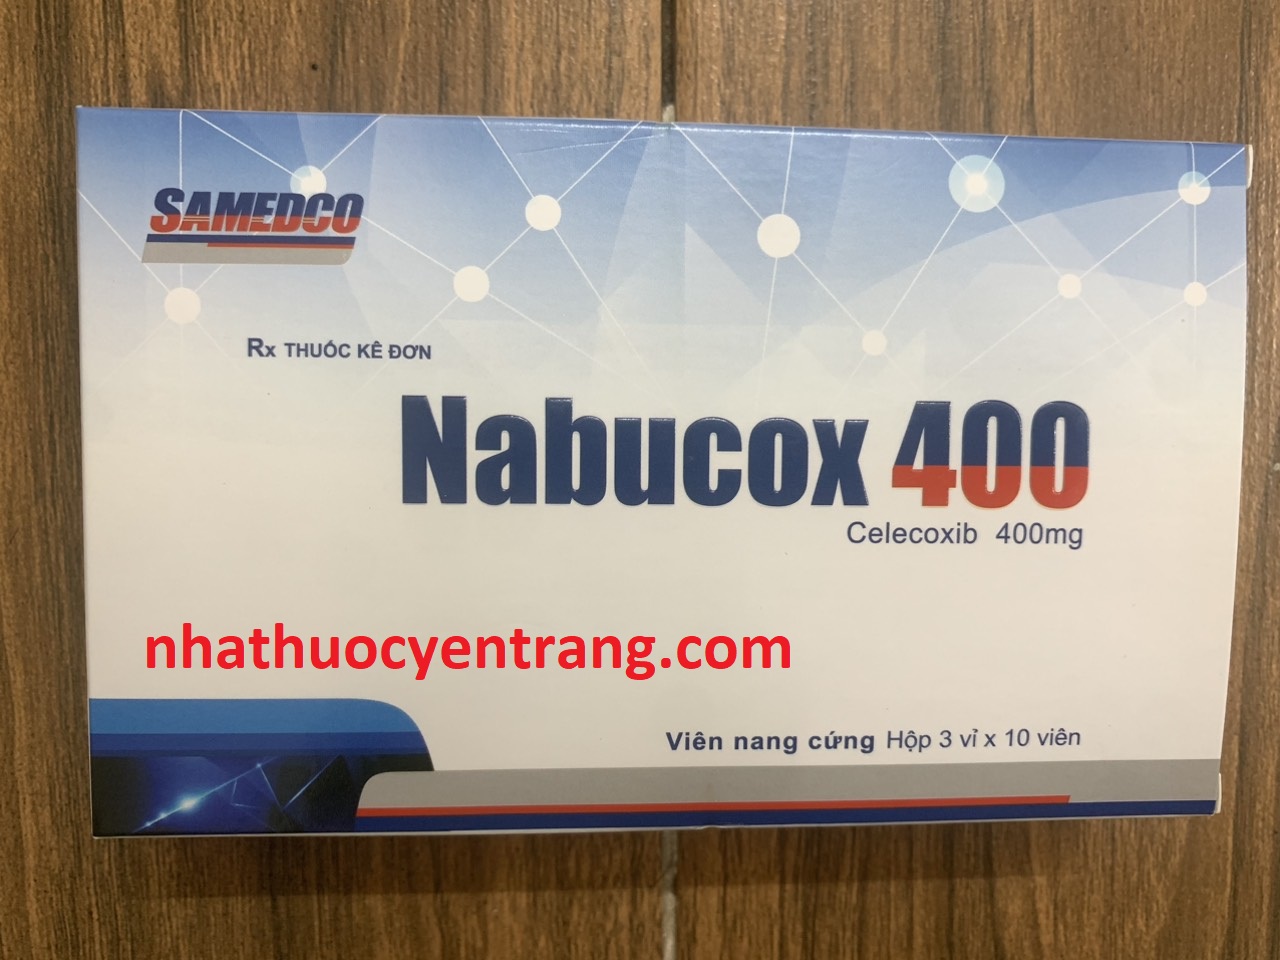 Nabucox 400mg